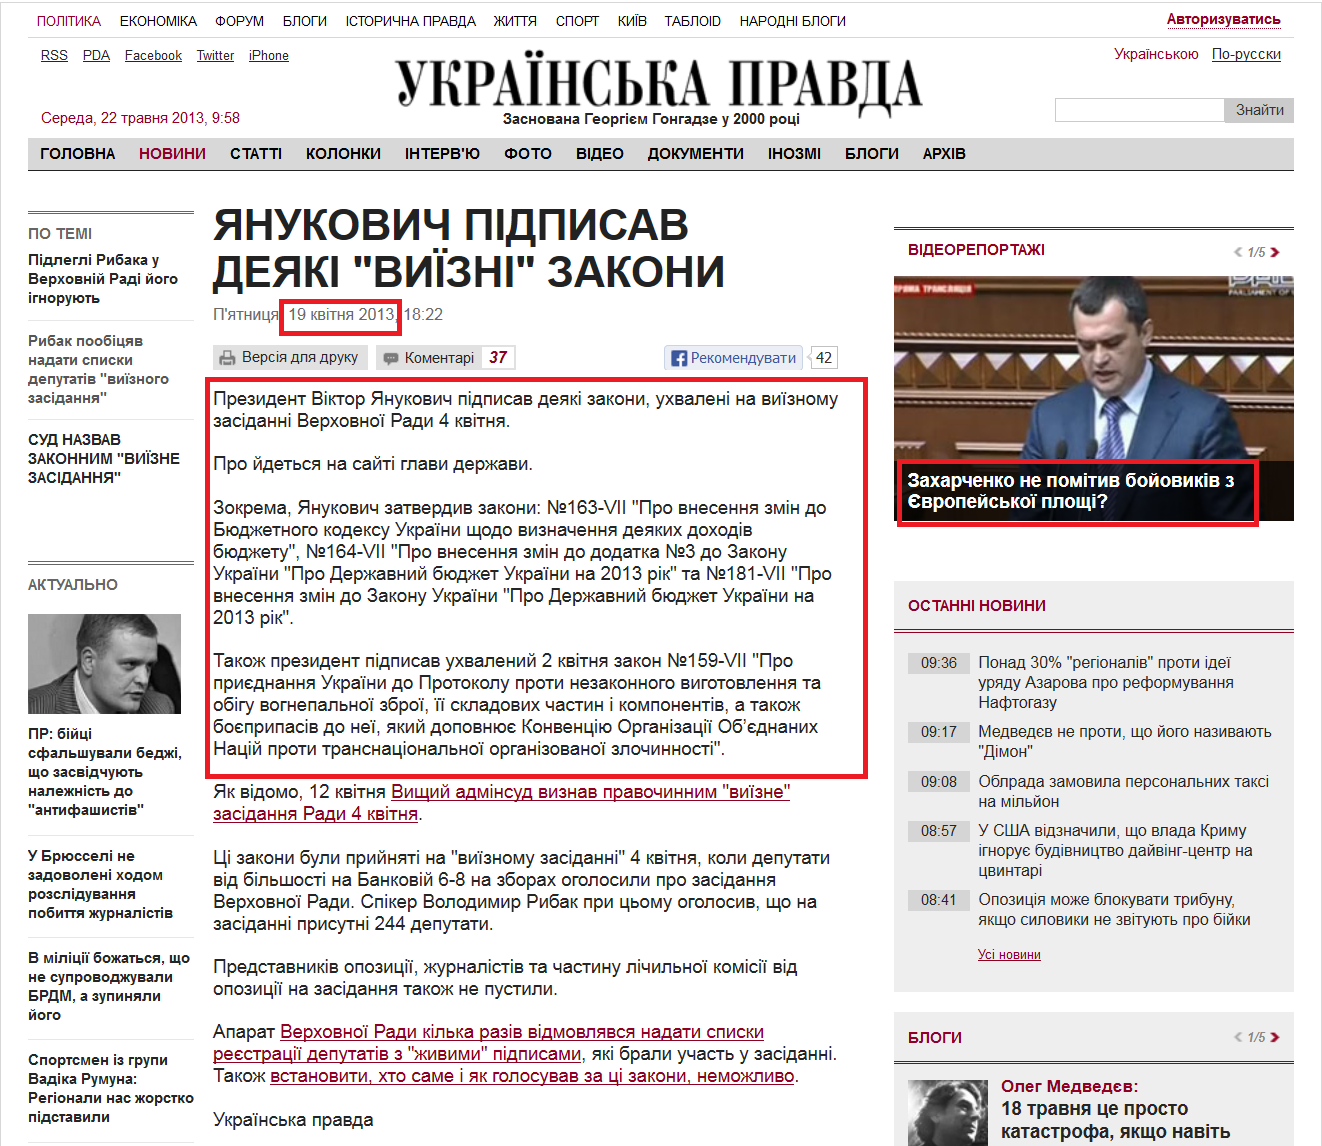 http://www.pravda.com.ua/news/2013/04/19/6988575/